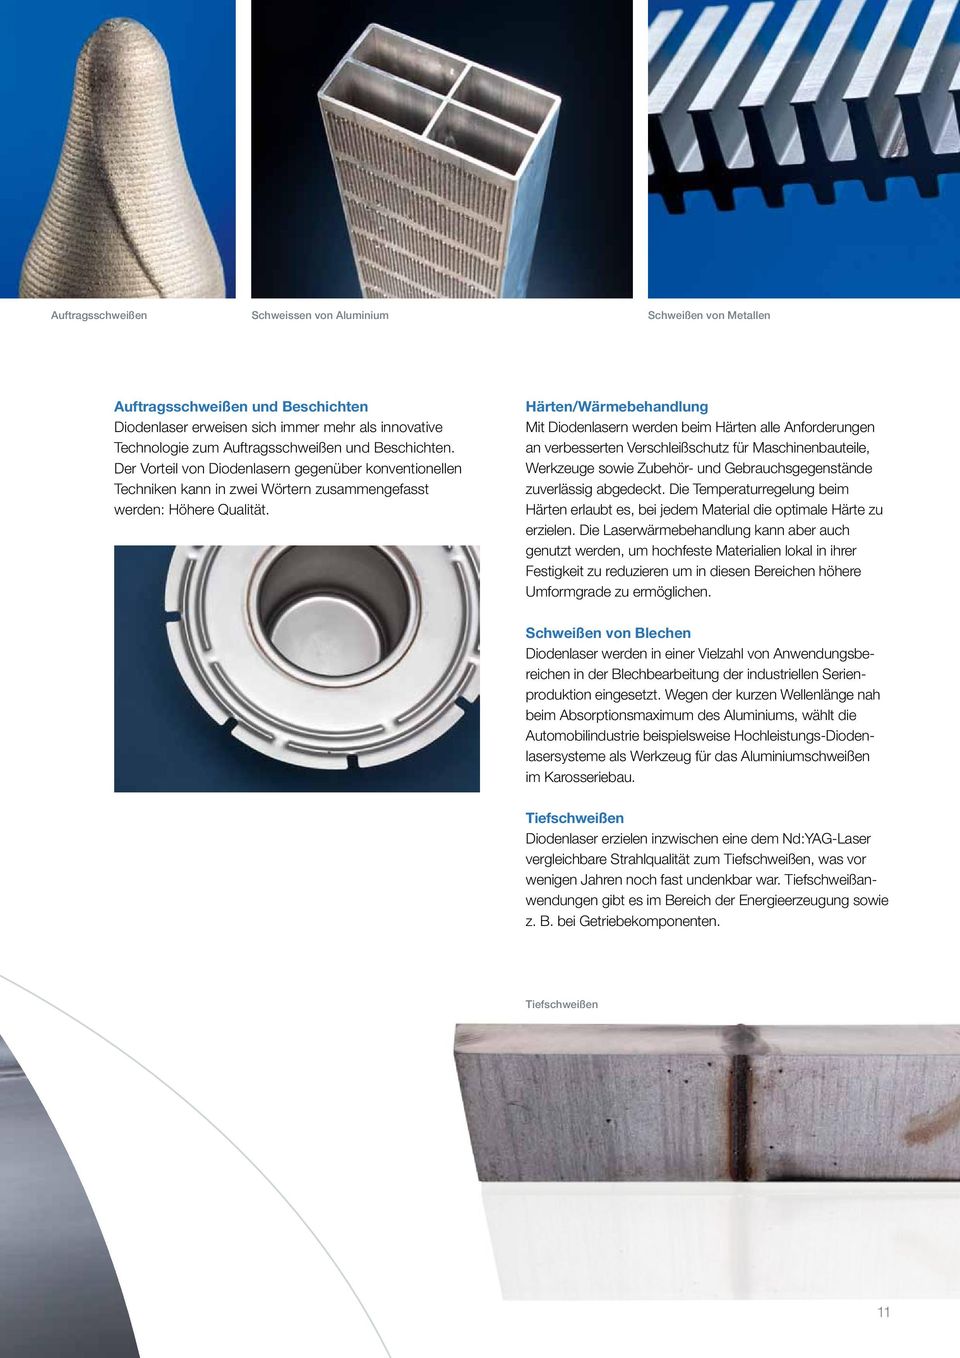 Härten/Wärmebehandlung Mit Diodenlasern werden beim Härten alle Anforderungen an verbesserten Verschleißschutz für Maschinenbauteile, Werkzeuge sowie Zubehör- und Gebrauchsgegenstände zuverlässig